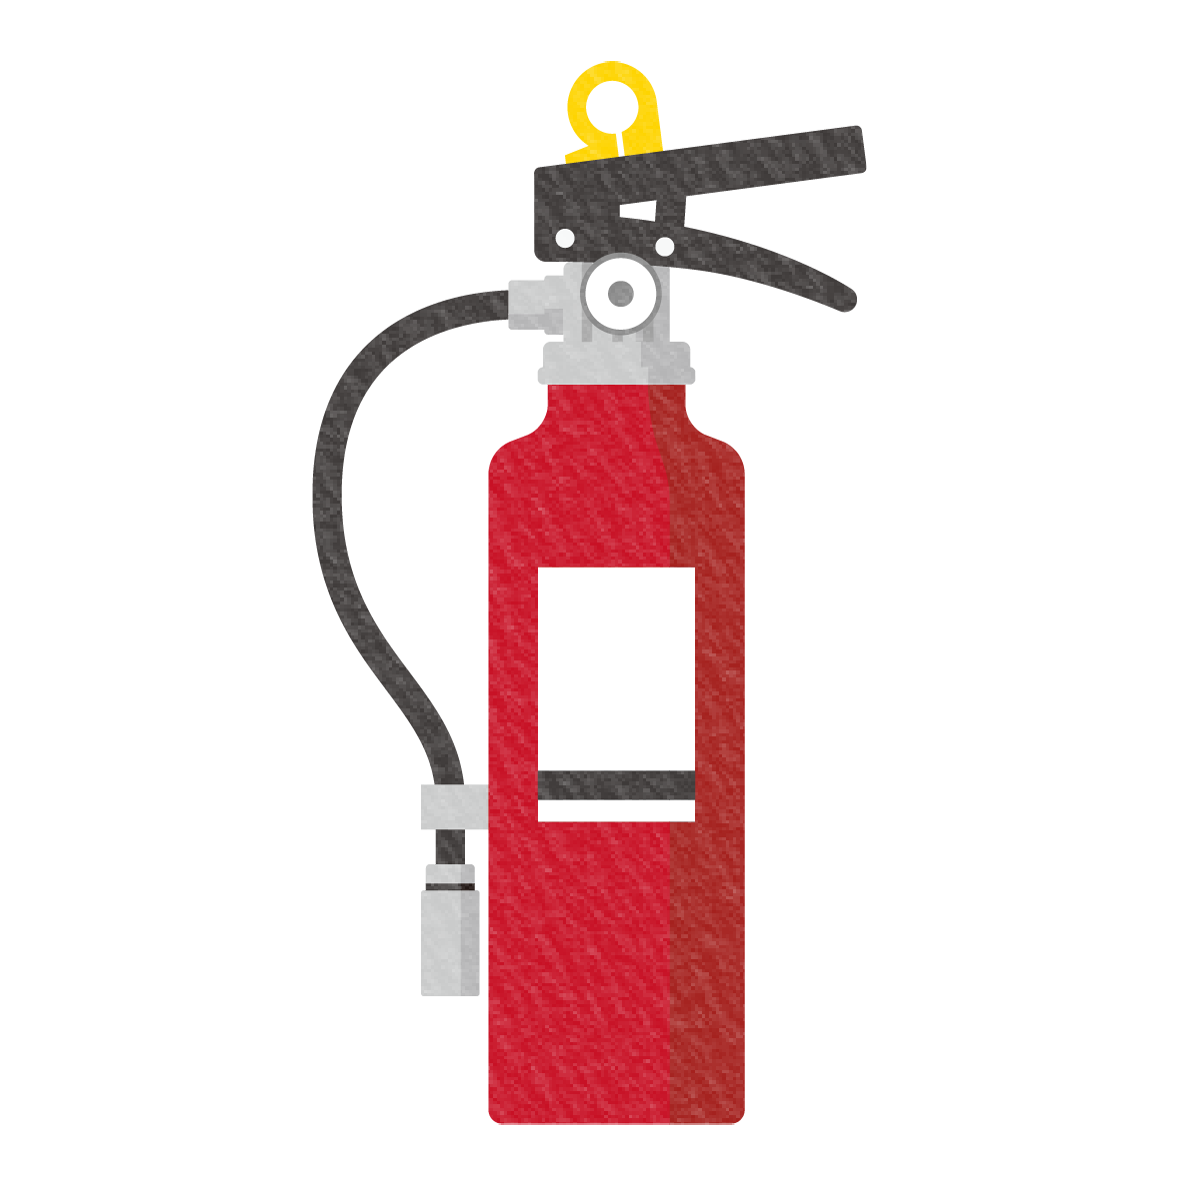 消火器のイラスト素材です。<br>
防災訓練のお知らせのイラストとしても、フロアマップの消火器の設置場所の印としてもお使いいただけます。<br>
ぜひ活用していただき、地域やグループの防災意識の向上にお役立てください☆